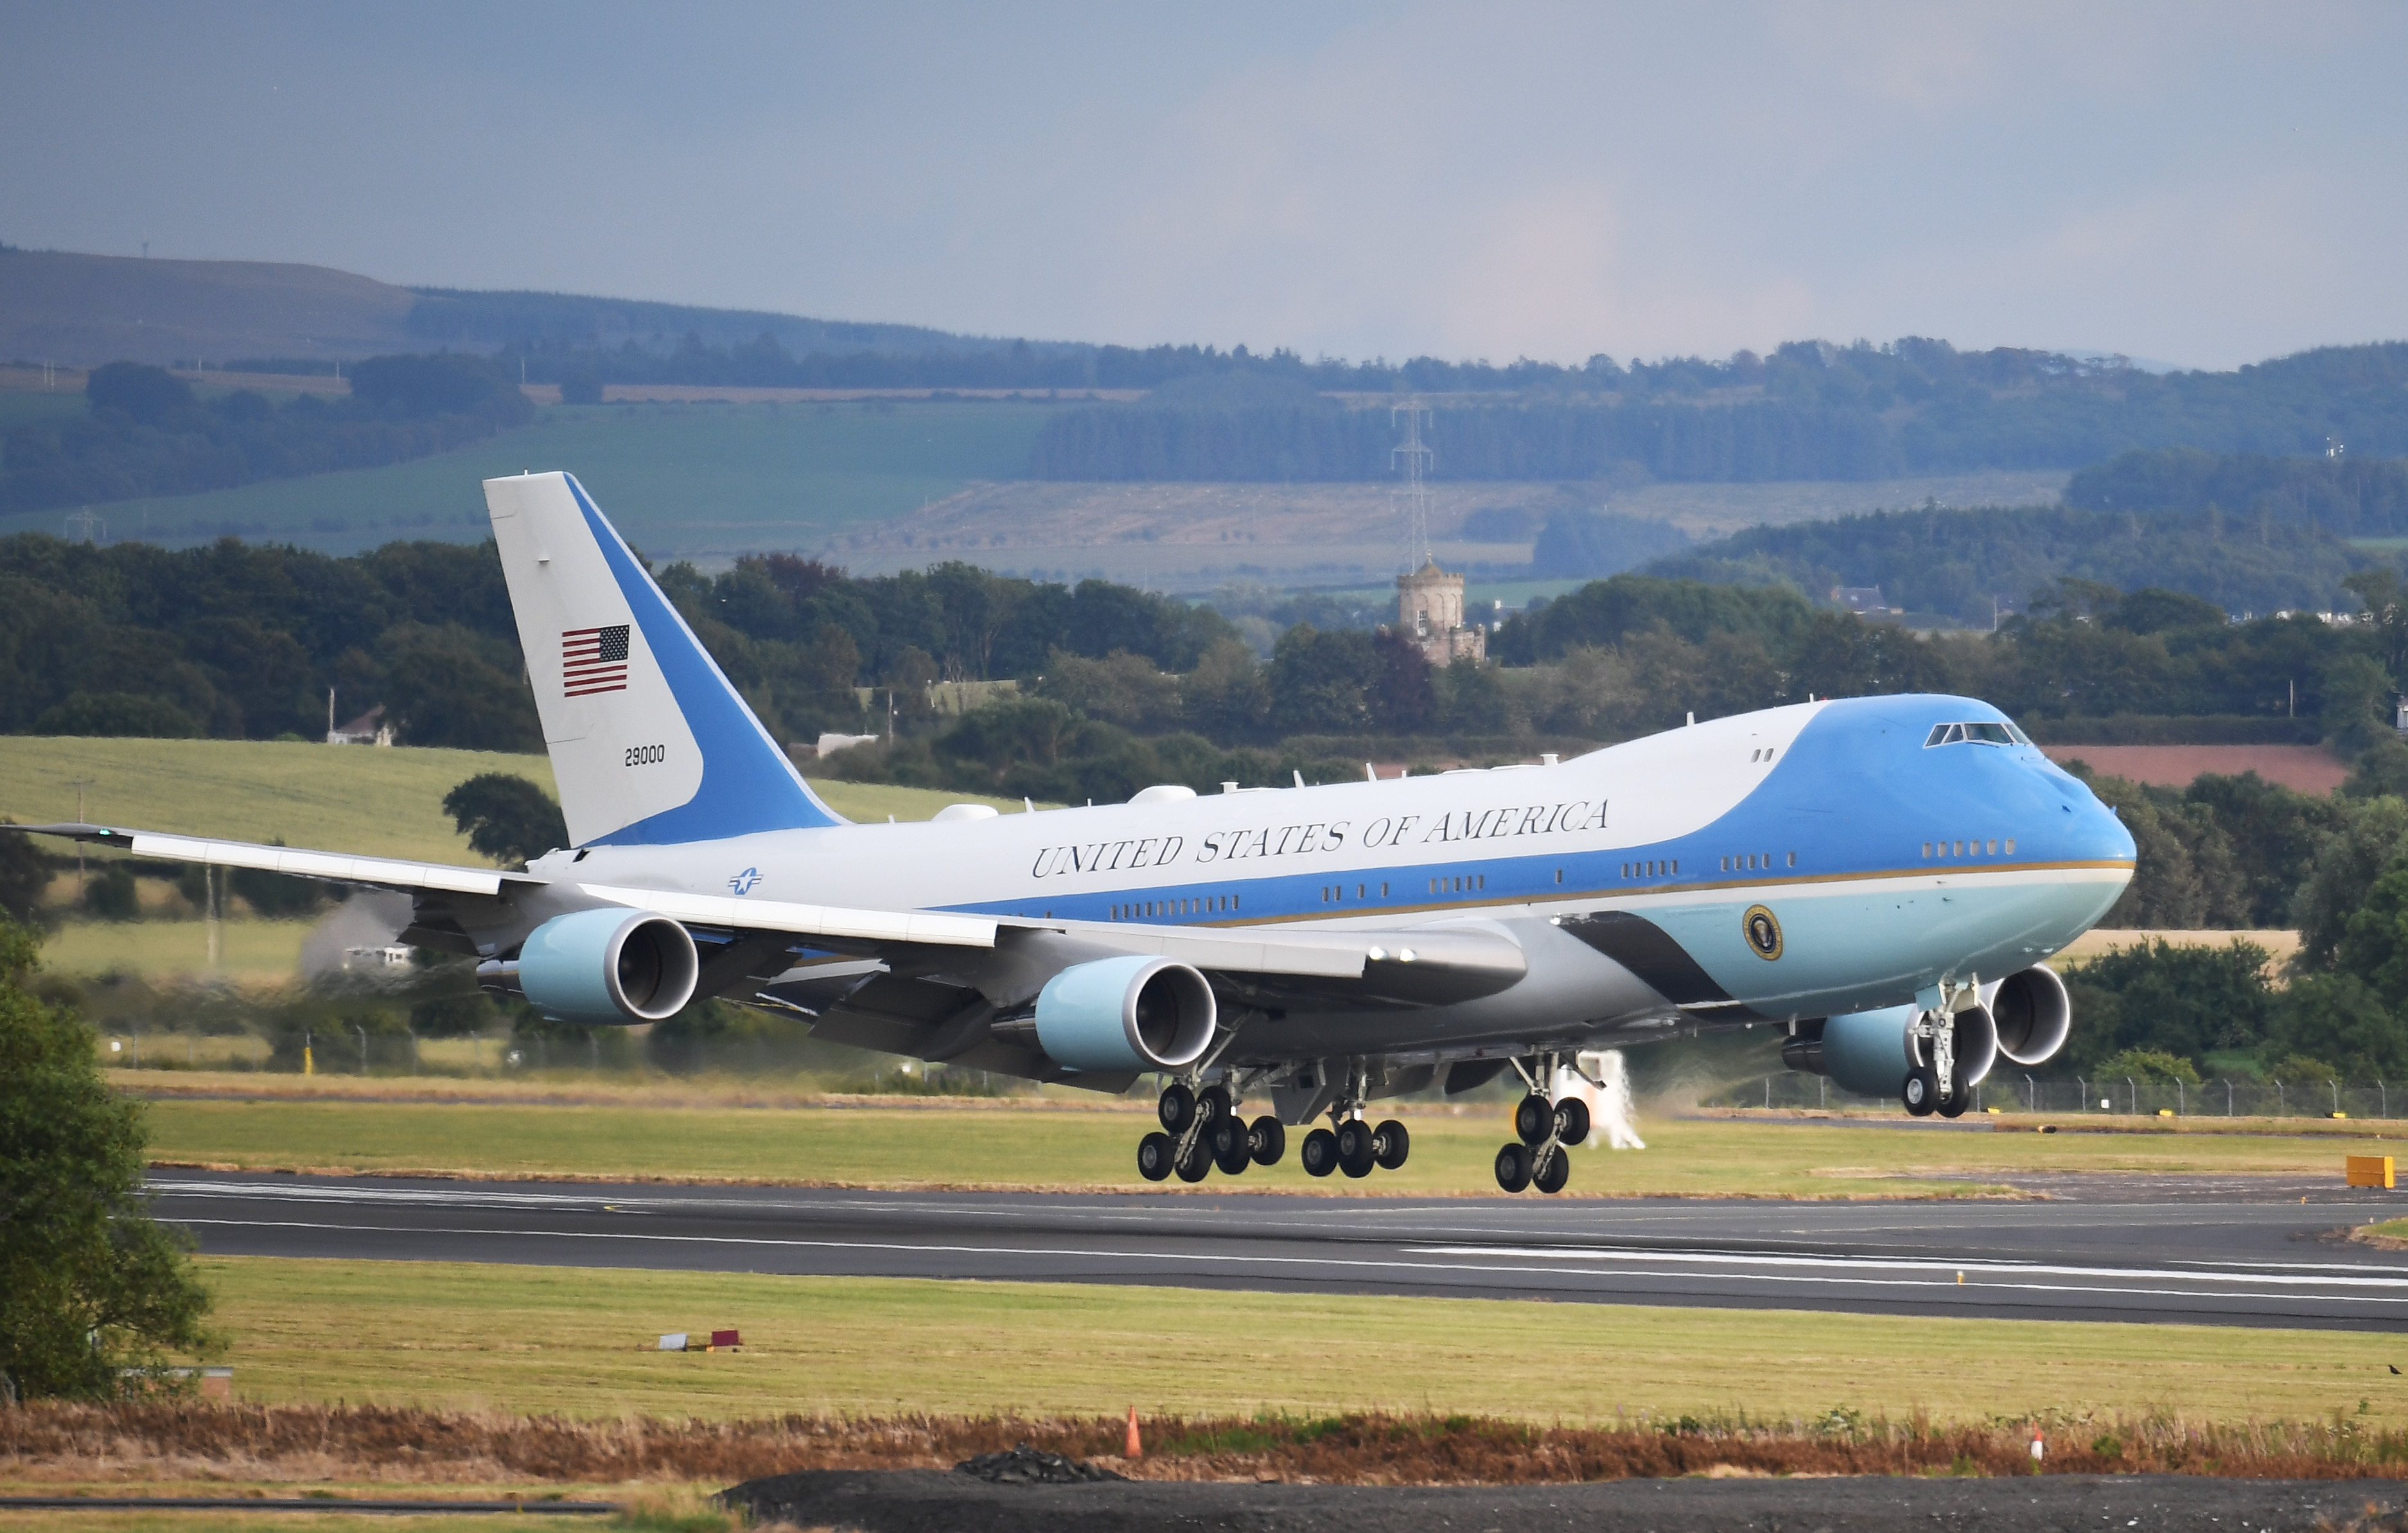 Самолеты первая часть. Boeing 747 Air Force one. Боинг 747 президента США. Air Force one Boeing 747-8. Самолет президента США Air Force one.